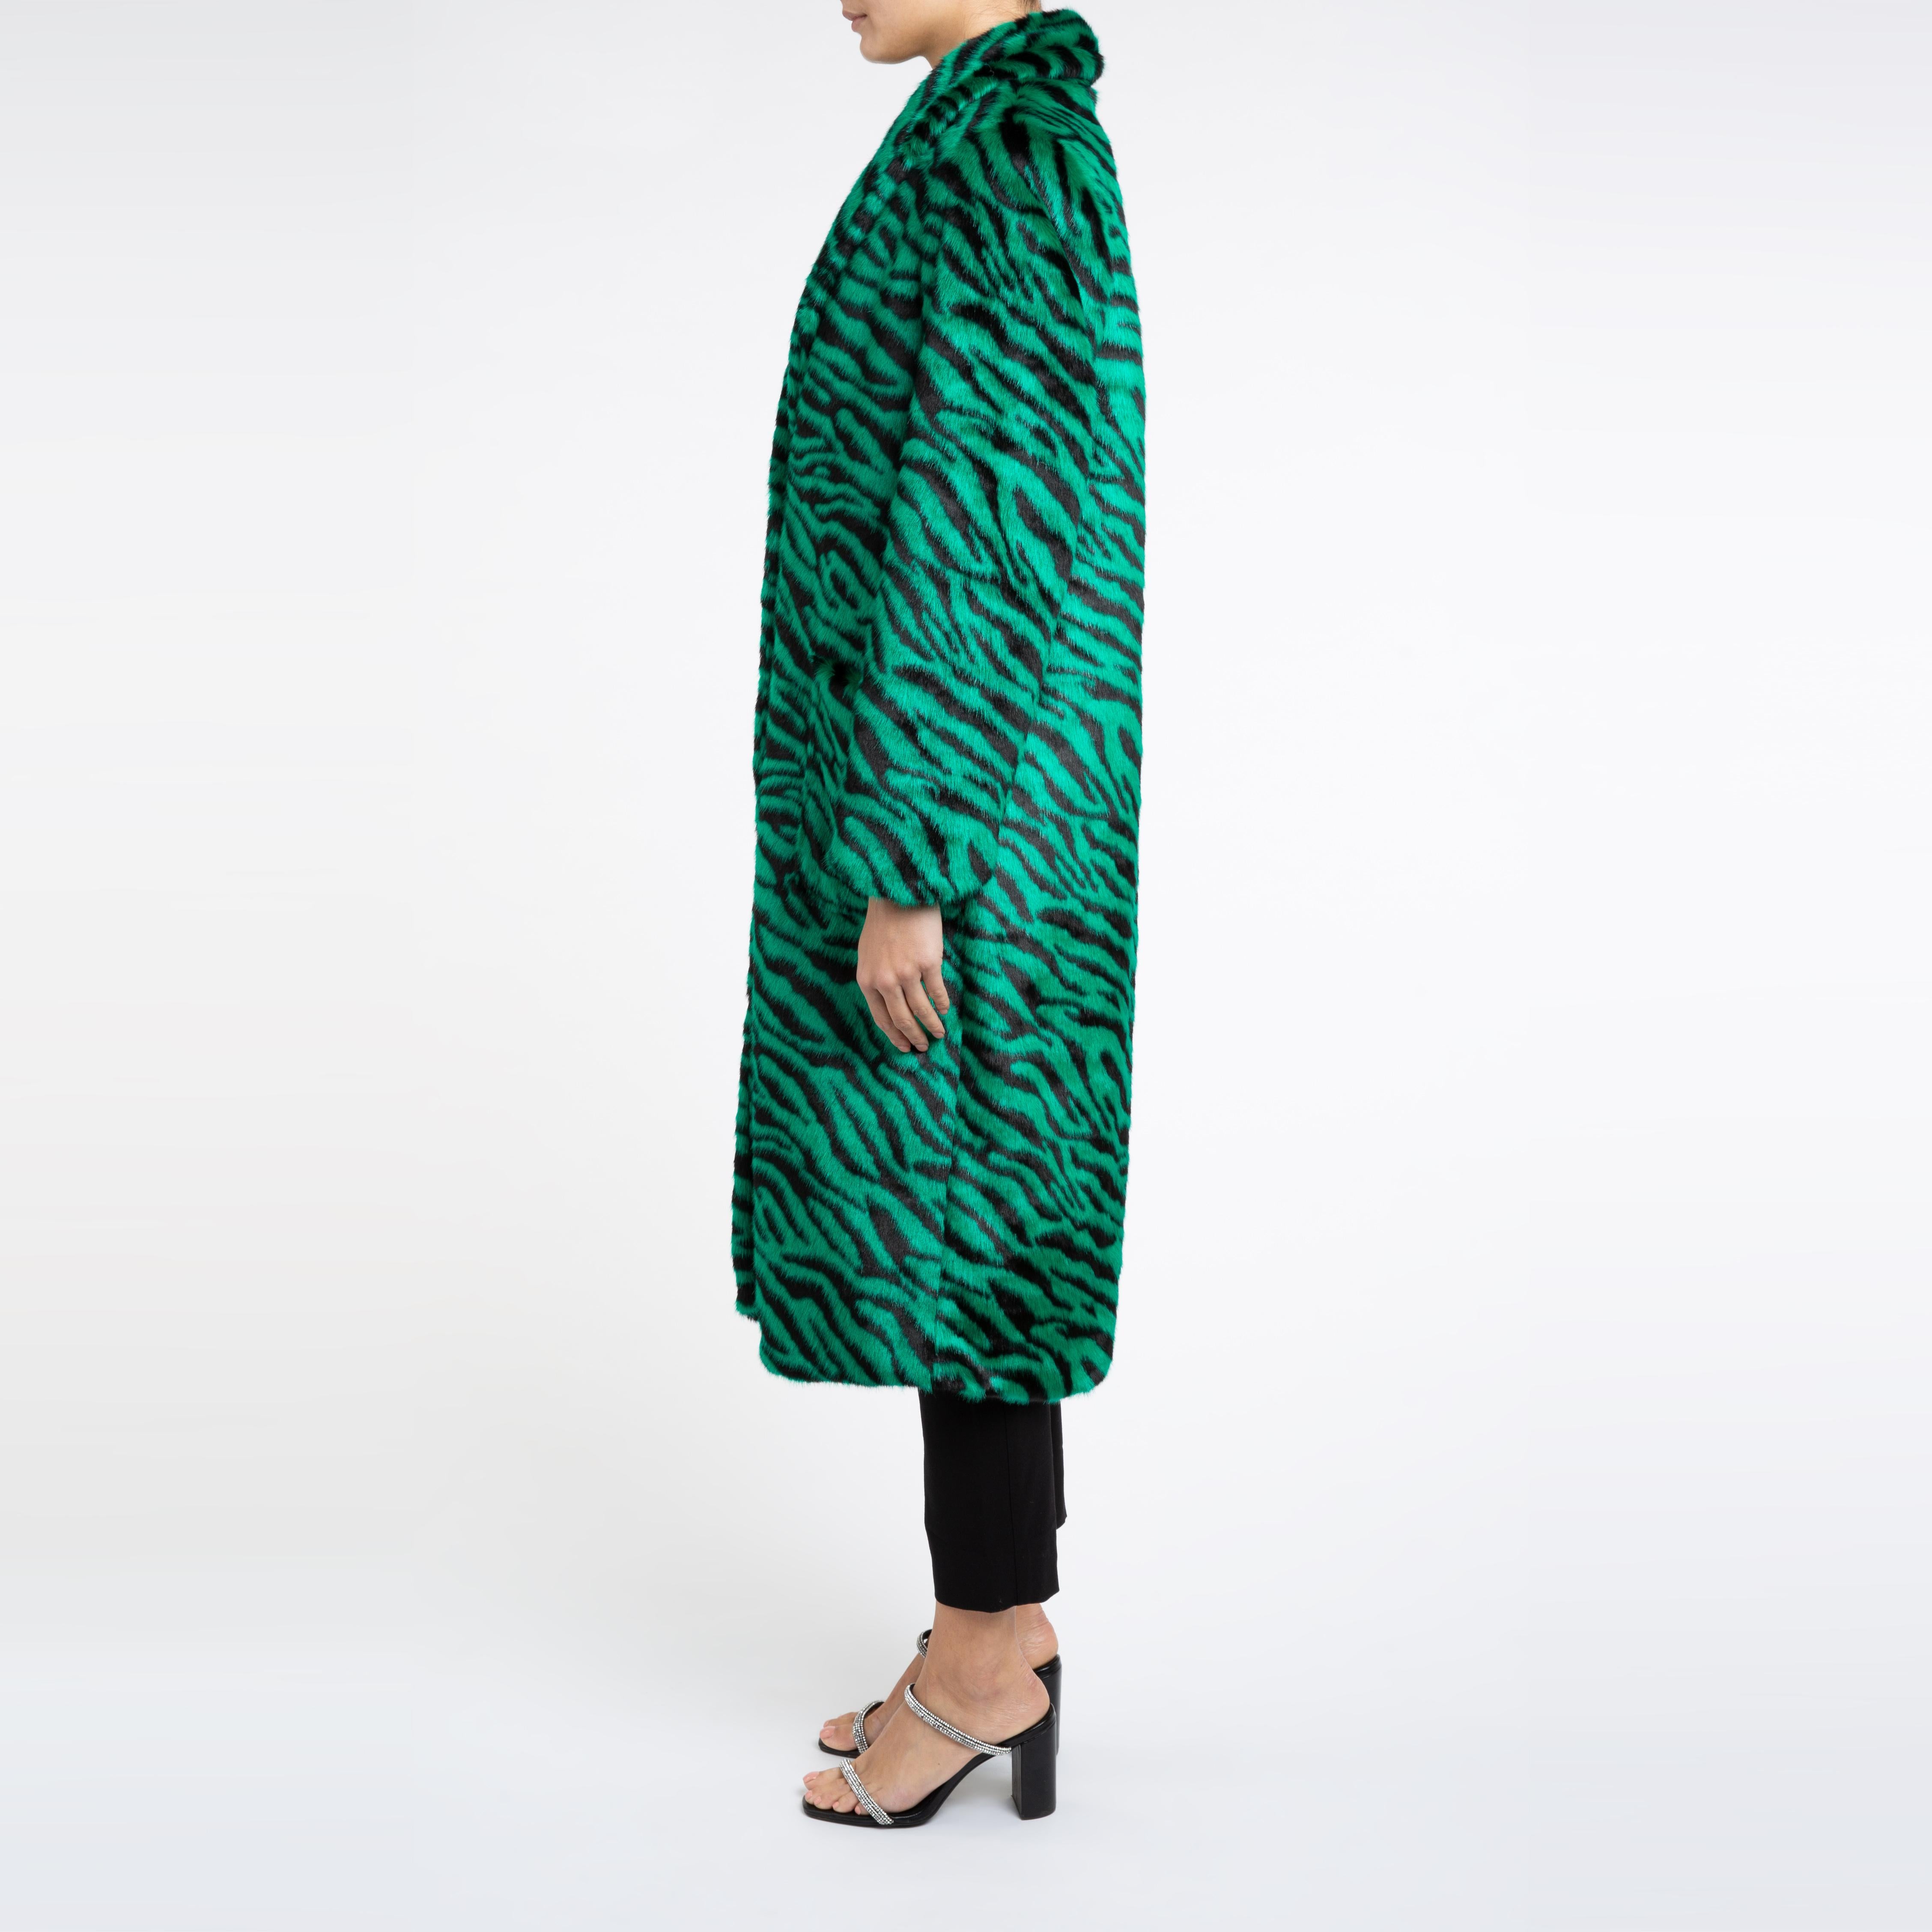 Esmeralda Kunstfell Mantel in Smaragdgrün Zebra Print Größe uk 8

Ein Mantel, den Sie sowohl zu Jeans als auch zu einem Kleid tragen können und der Sie in der kalten Jahreszeit warm hält. 
Dieses Longline-Design ist schmeichelhaft und lässt sich mit